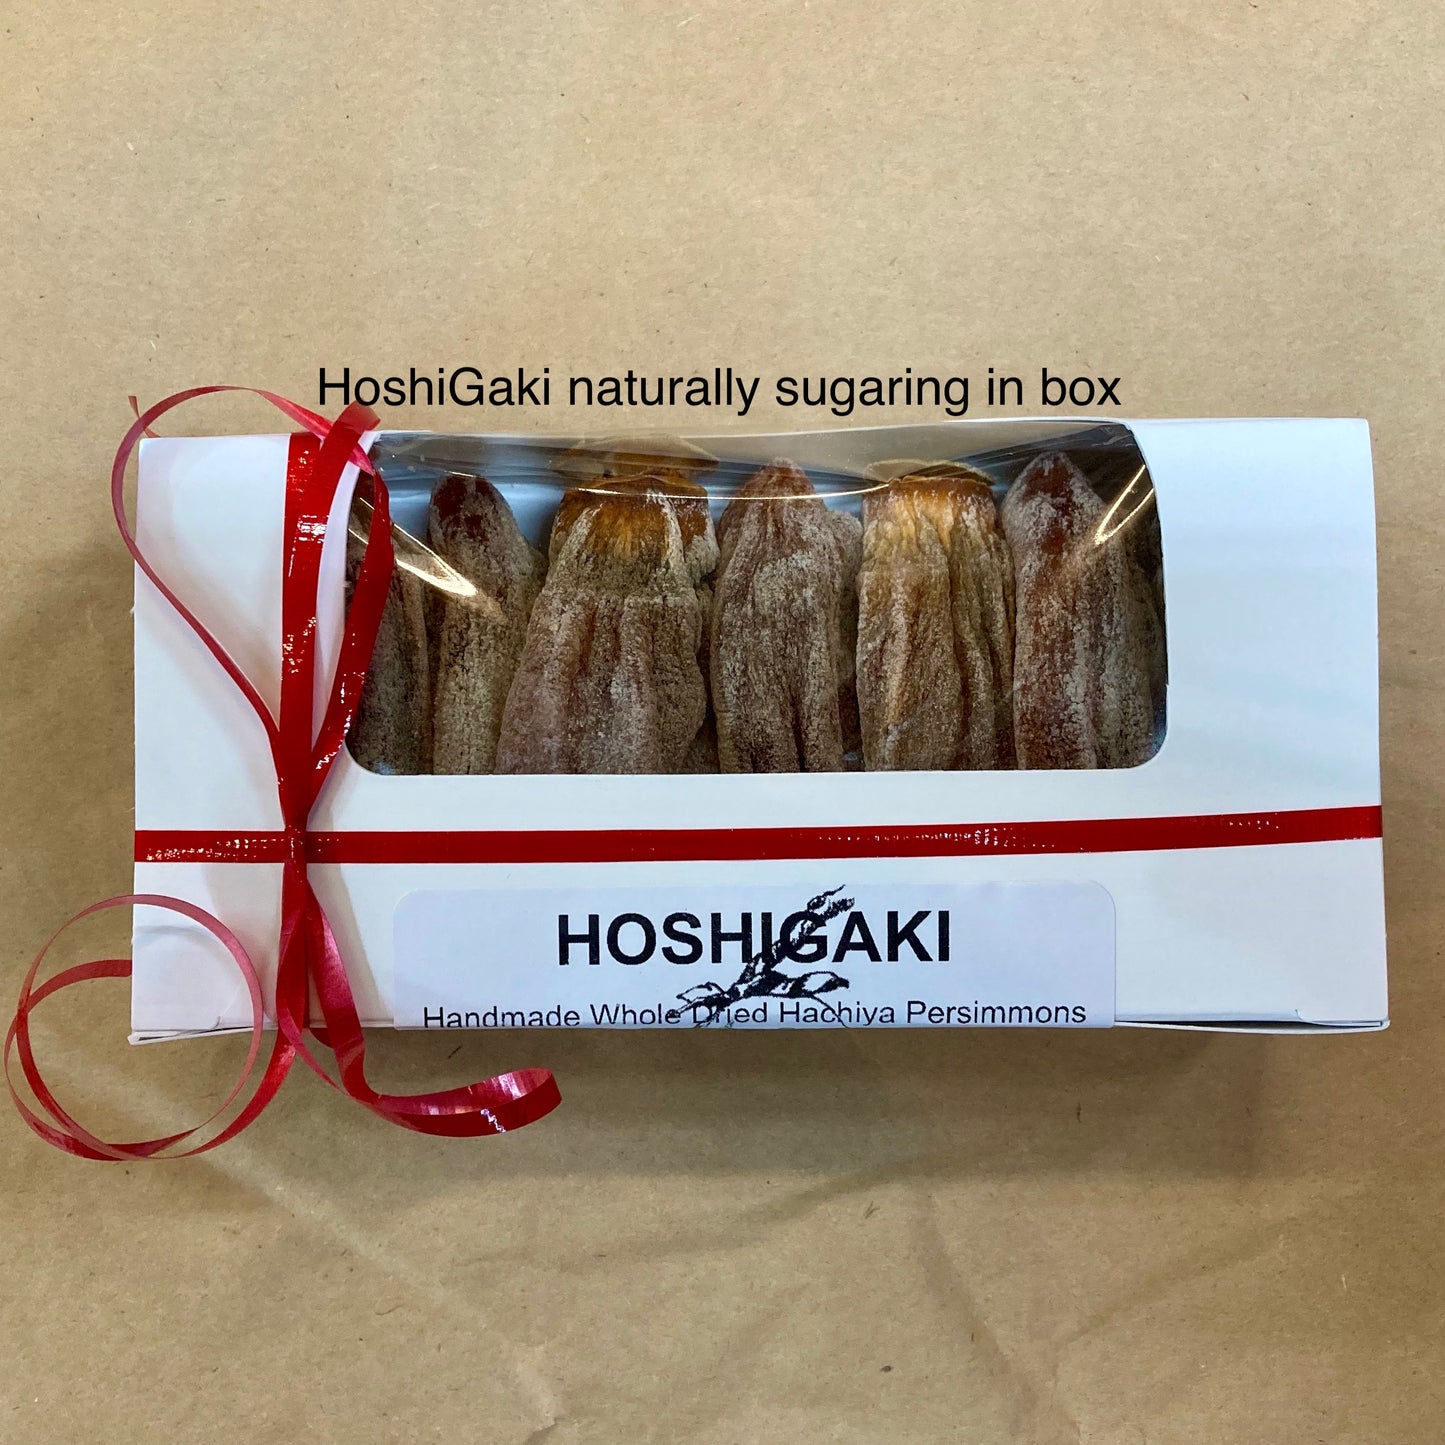 HoshiGaki